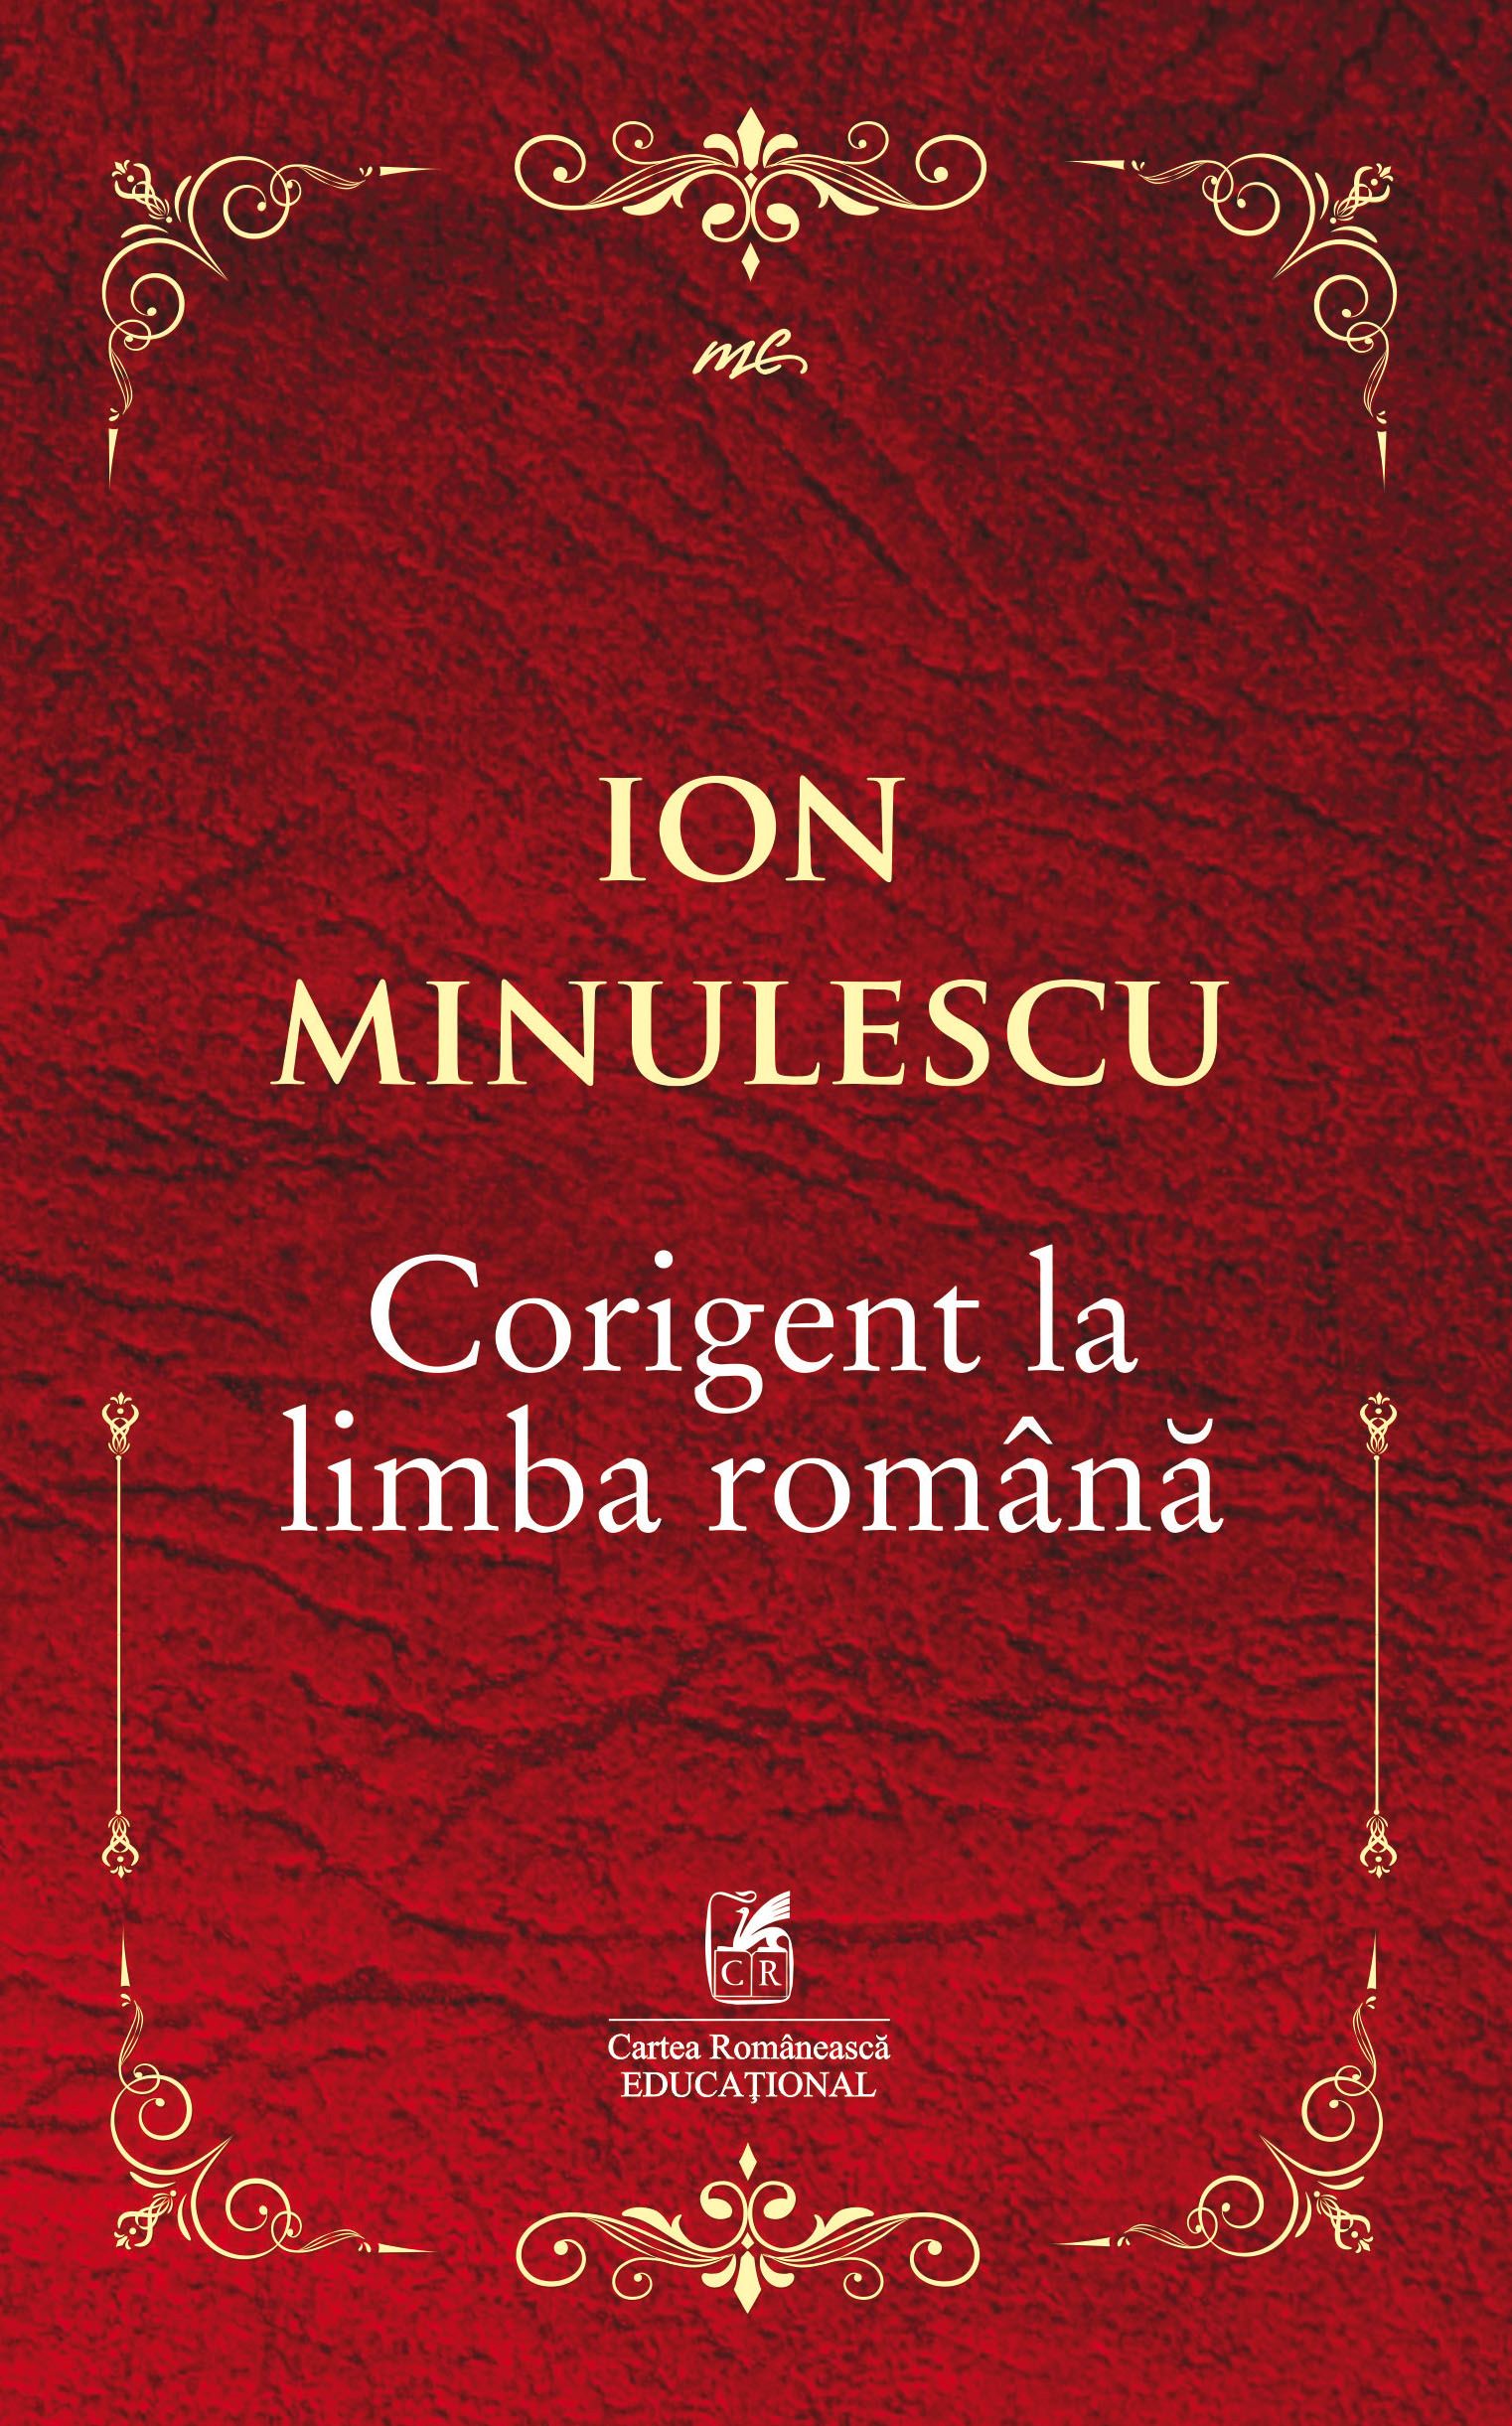 Corigent la limba romana | Ion Minulescu Cartea Romaneasca educational imagine 2022